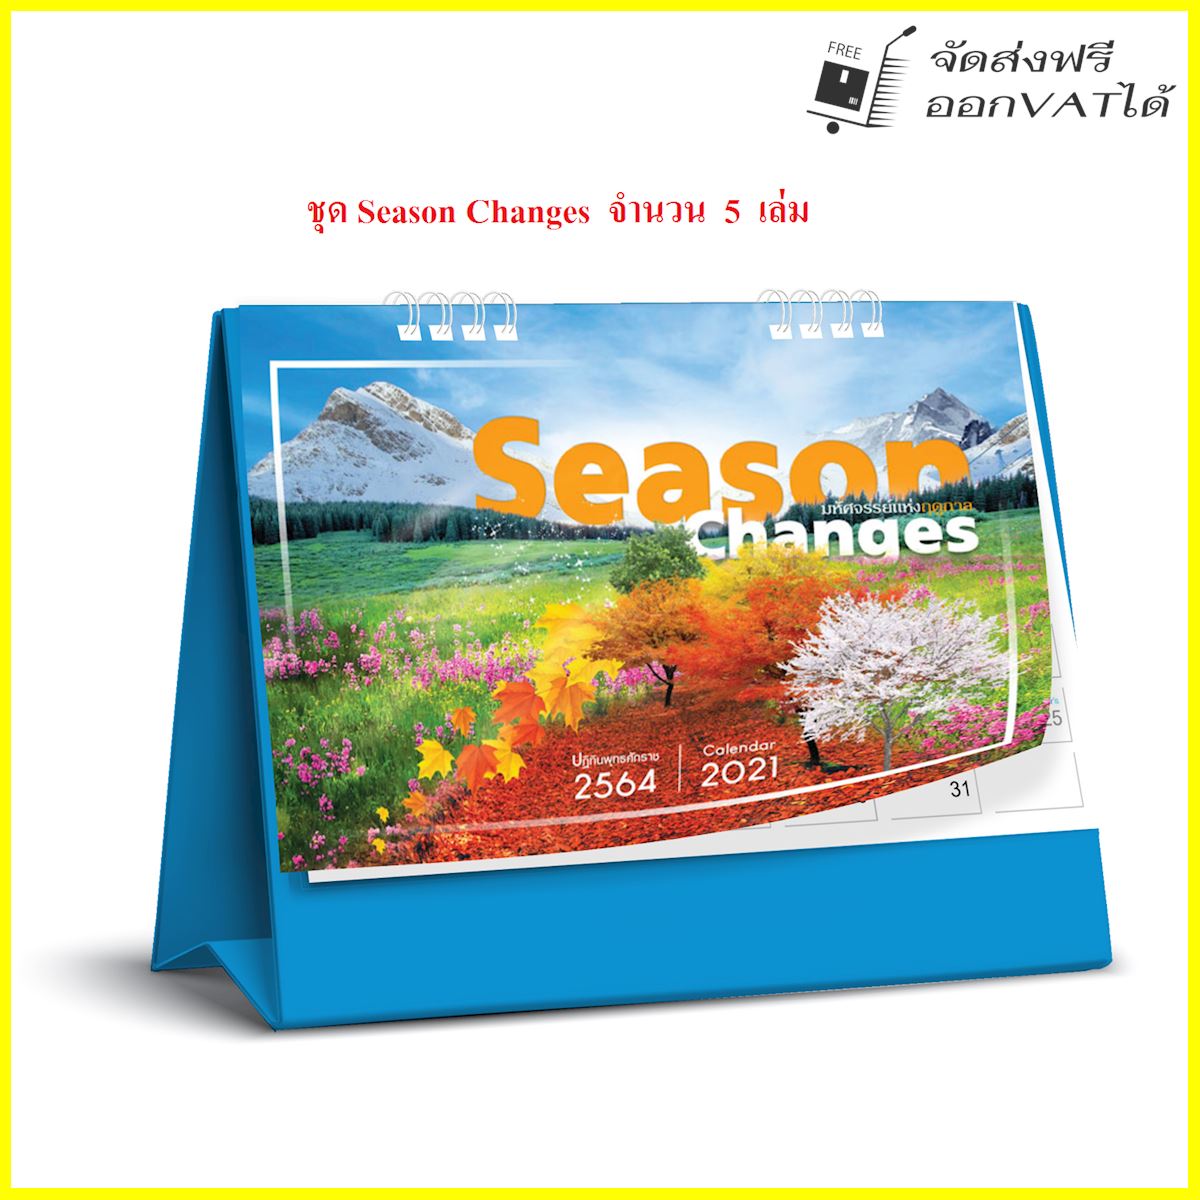 ปฏิทิน ตั้งโต๊ะ 2564 Calendar 2021 ชุด Season Changes_มหัศจรรย์แห่งฤดูกาล จำนวน 5 เล่ม ขนาด 6*8 นิ้ว แนวนอน จำนวน 14 แผ่น รวมโปสการ์ด